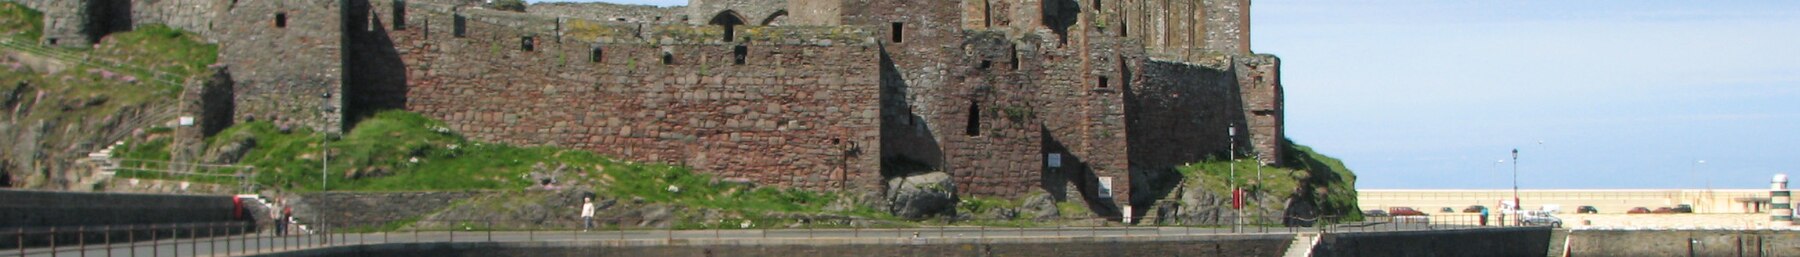 Isle of man banner Peel castle.jpg